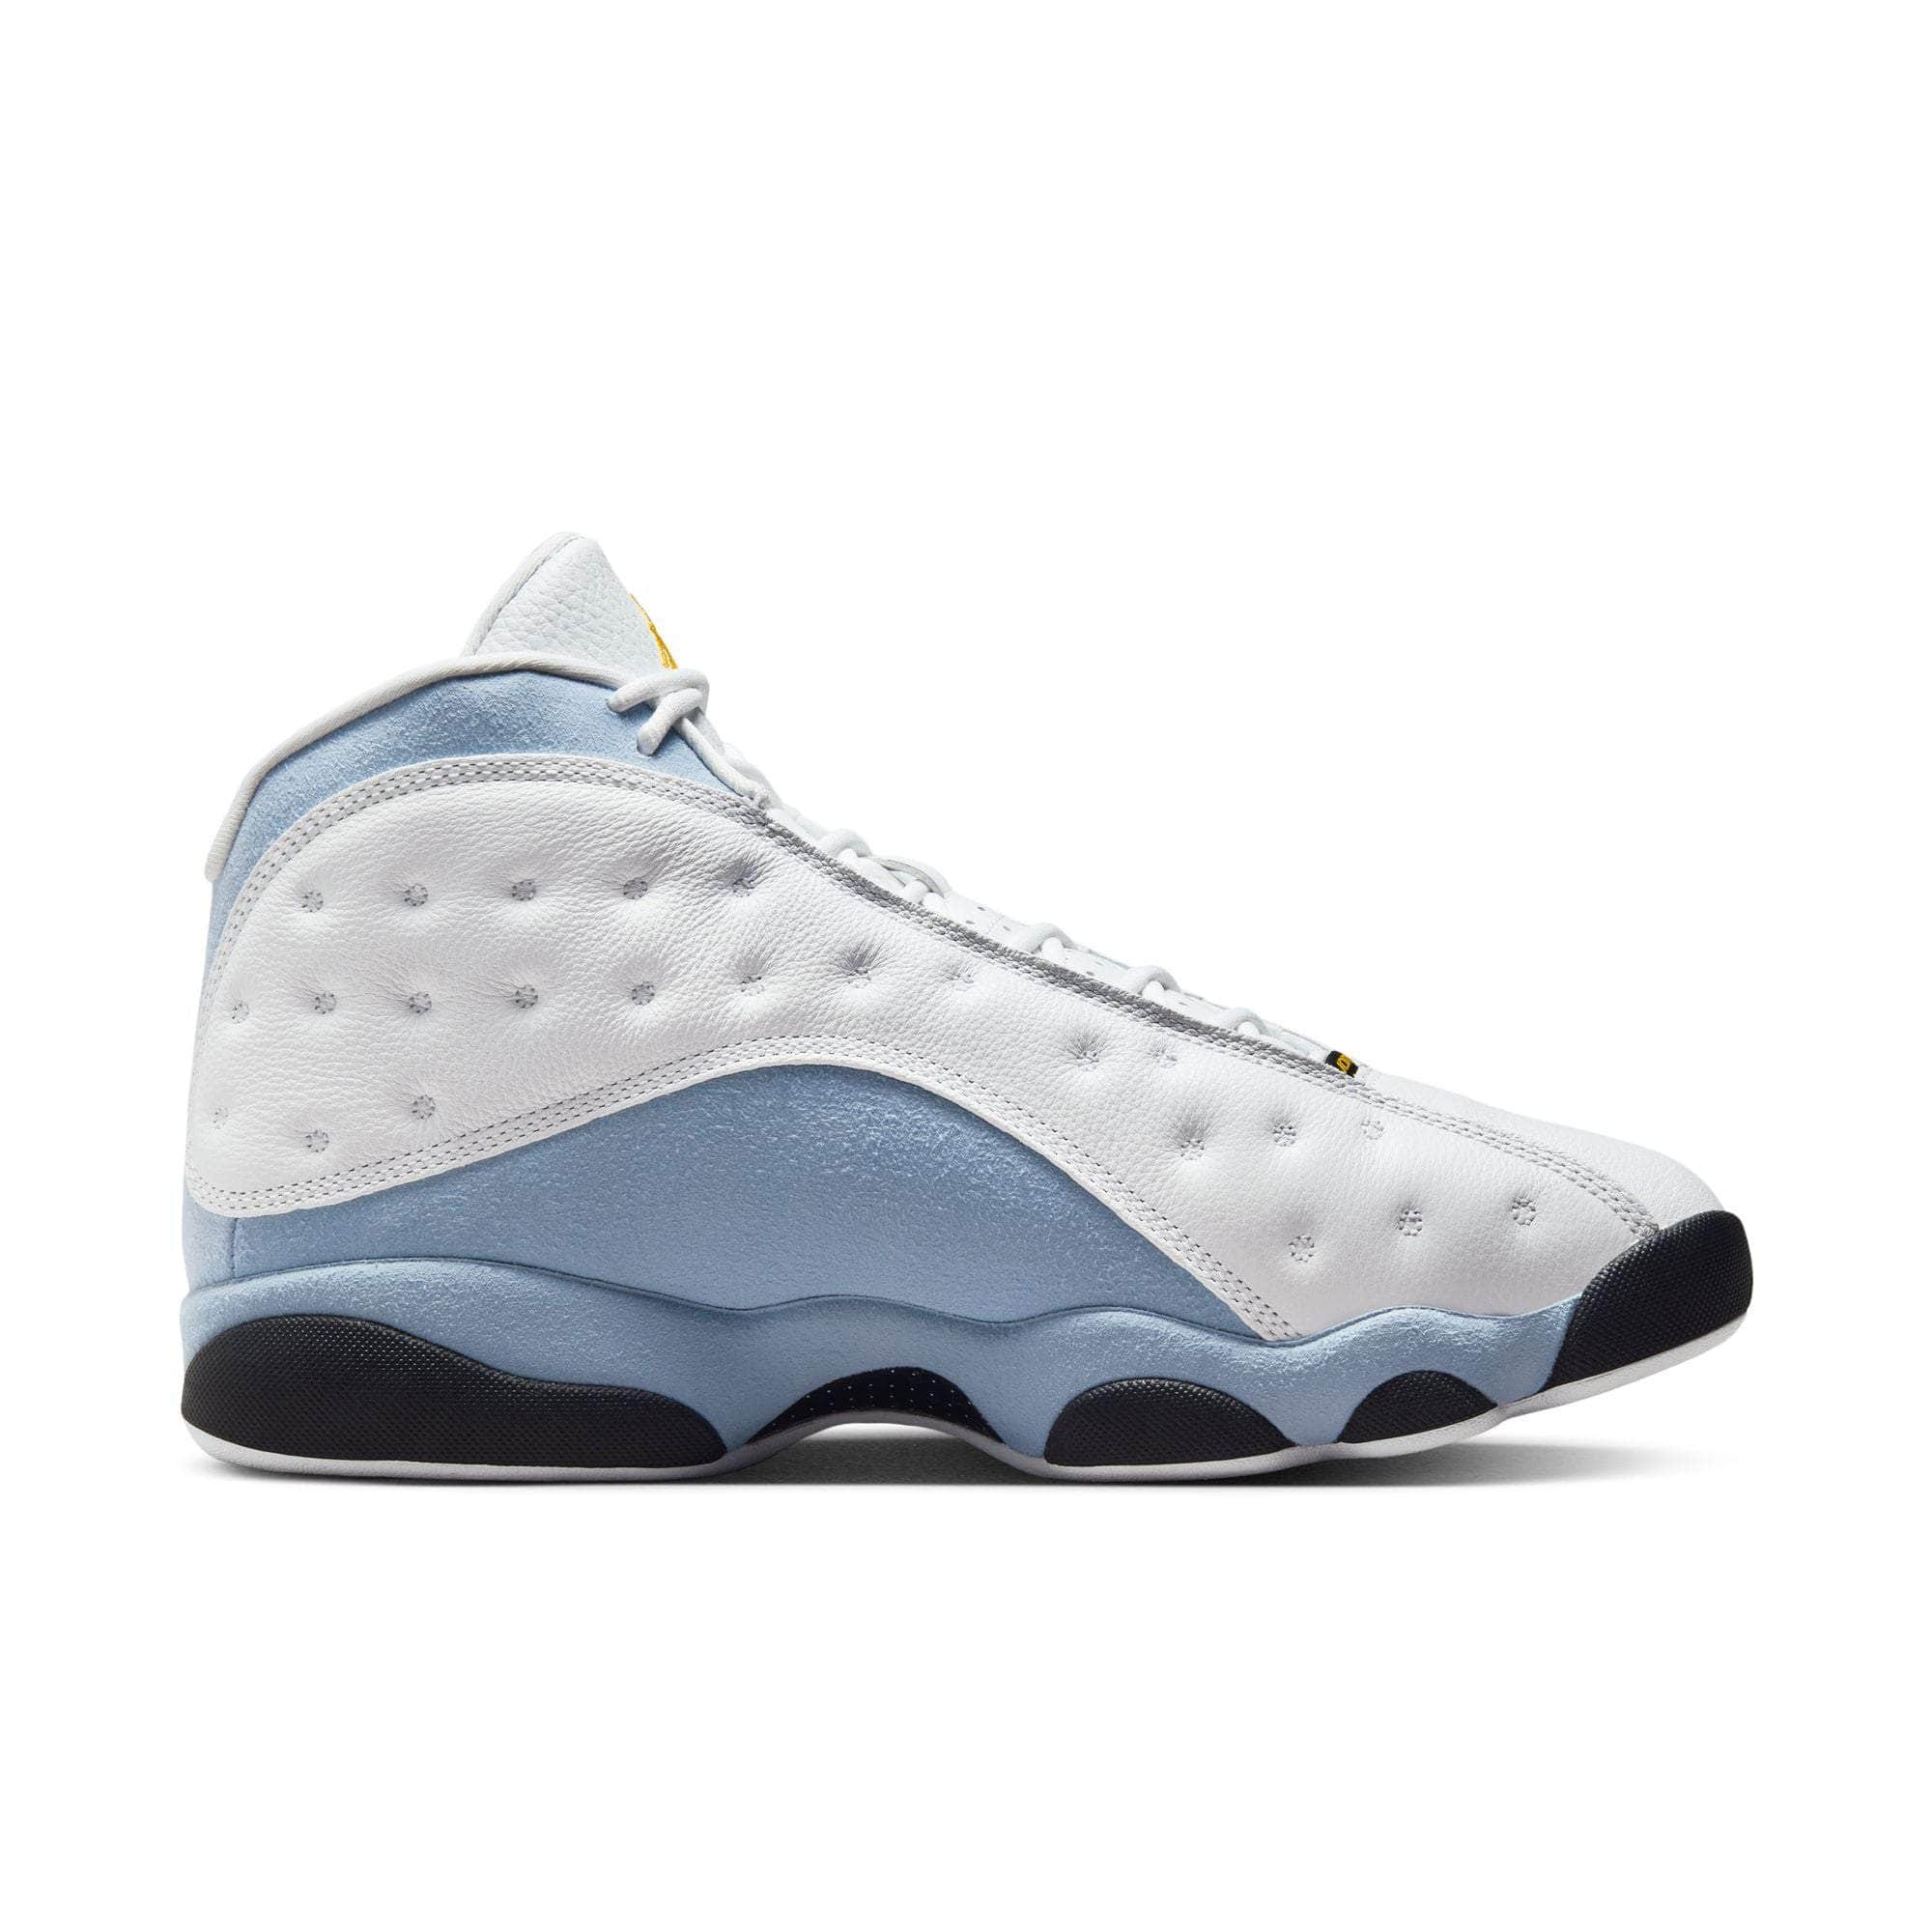 Air Jordan Footwear Air Jordan 13 Retro “Blue Grey” - Men's